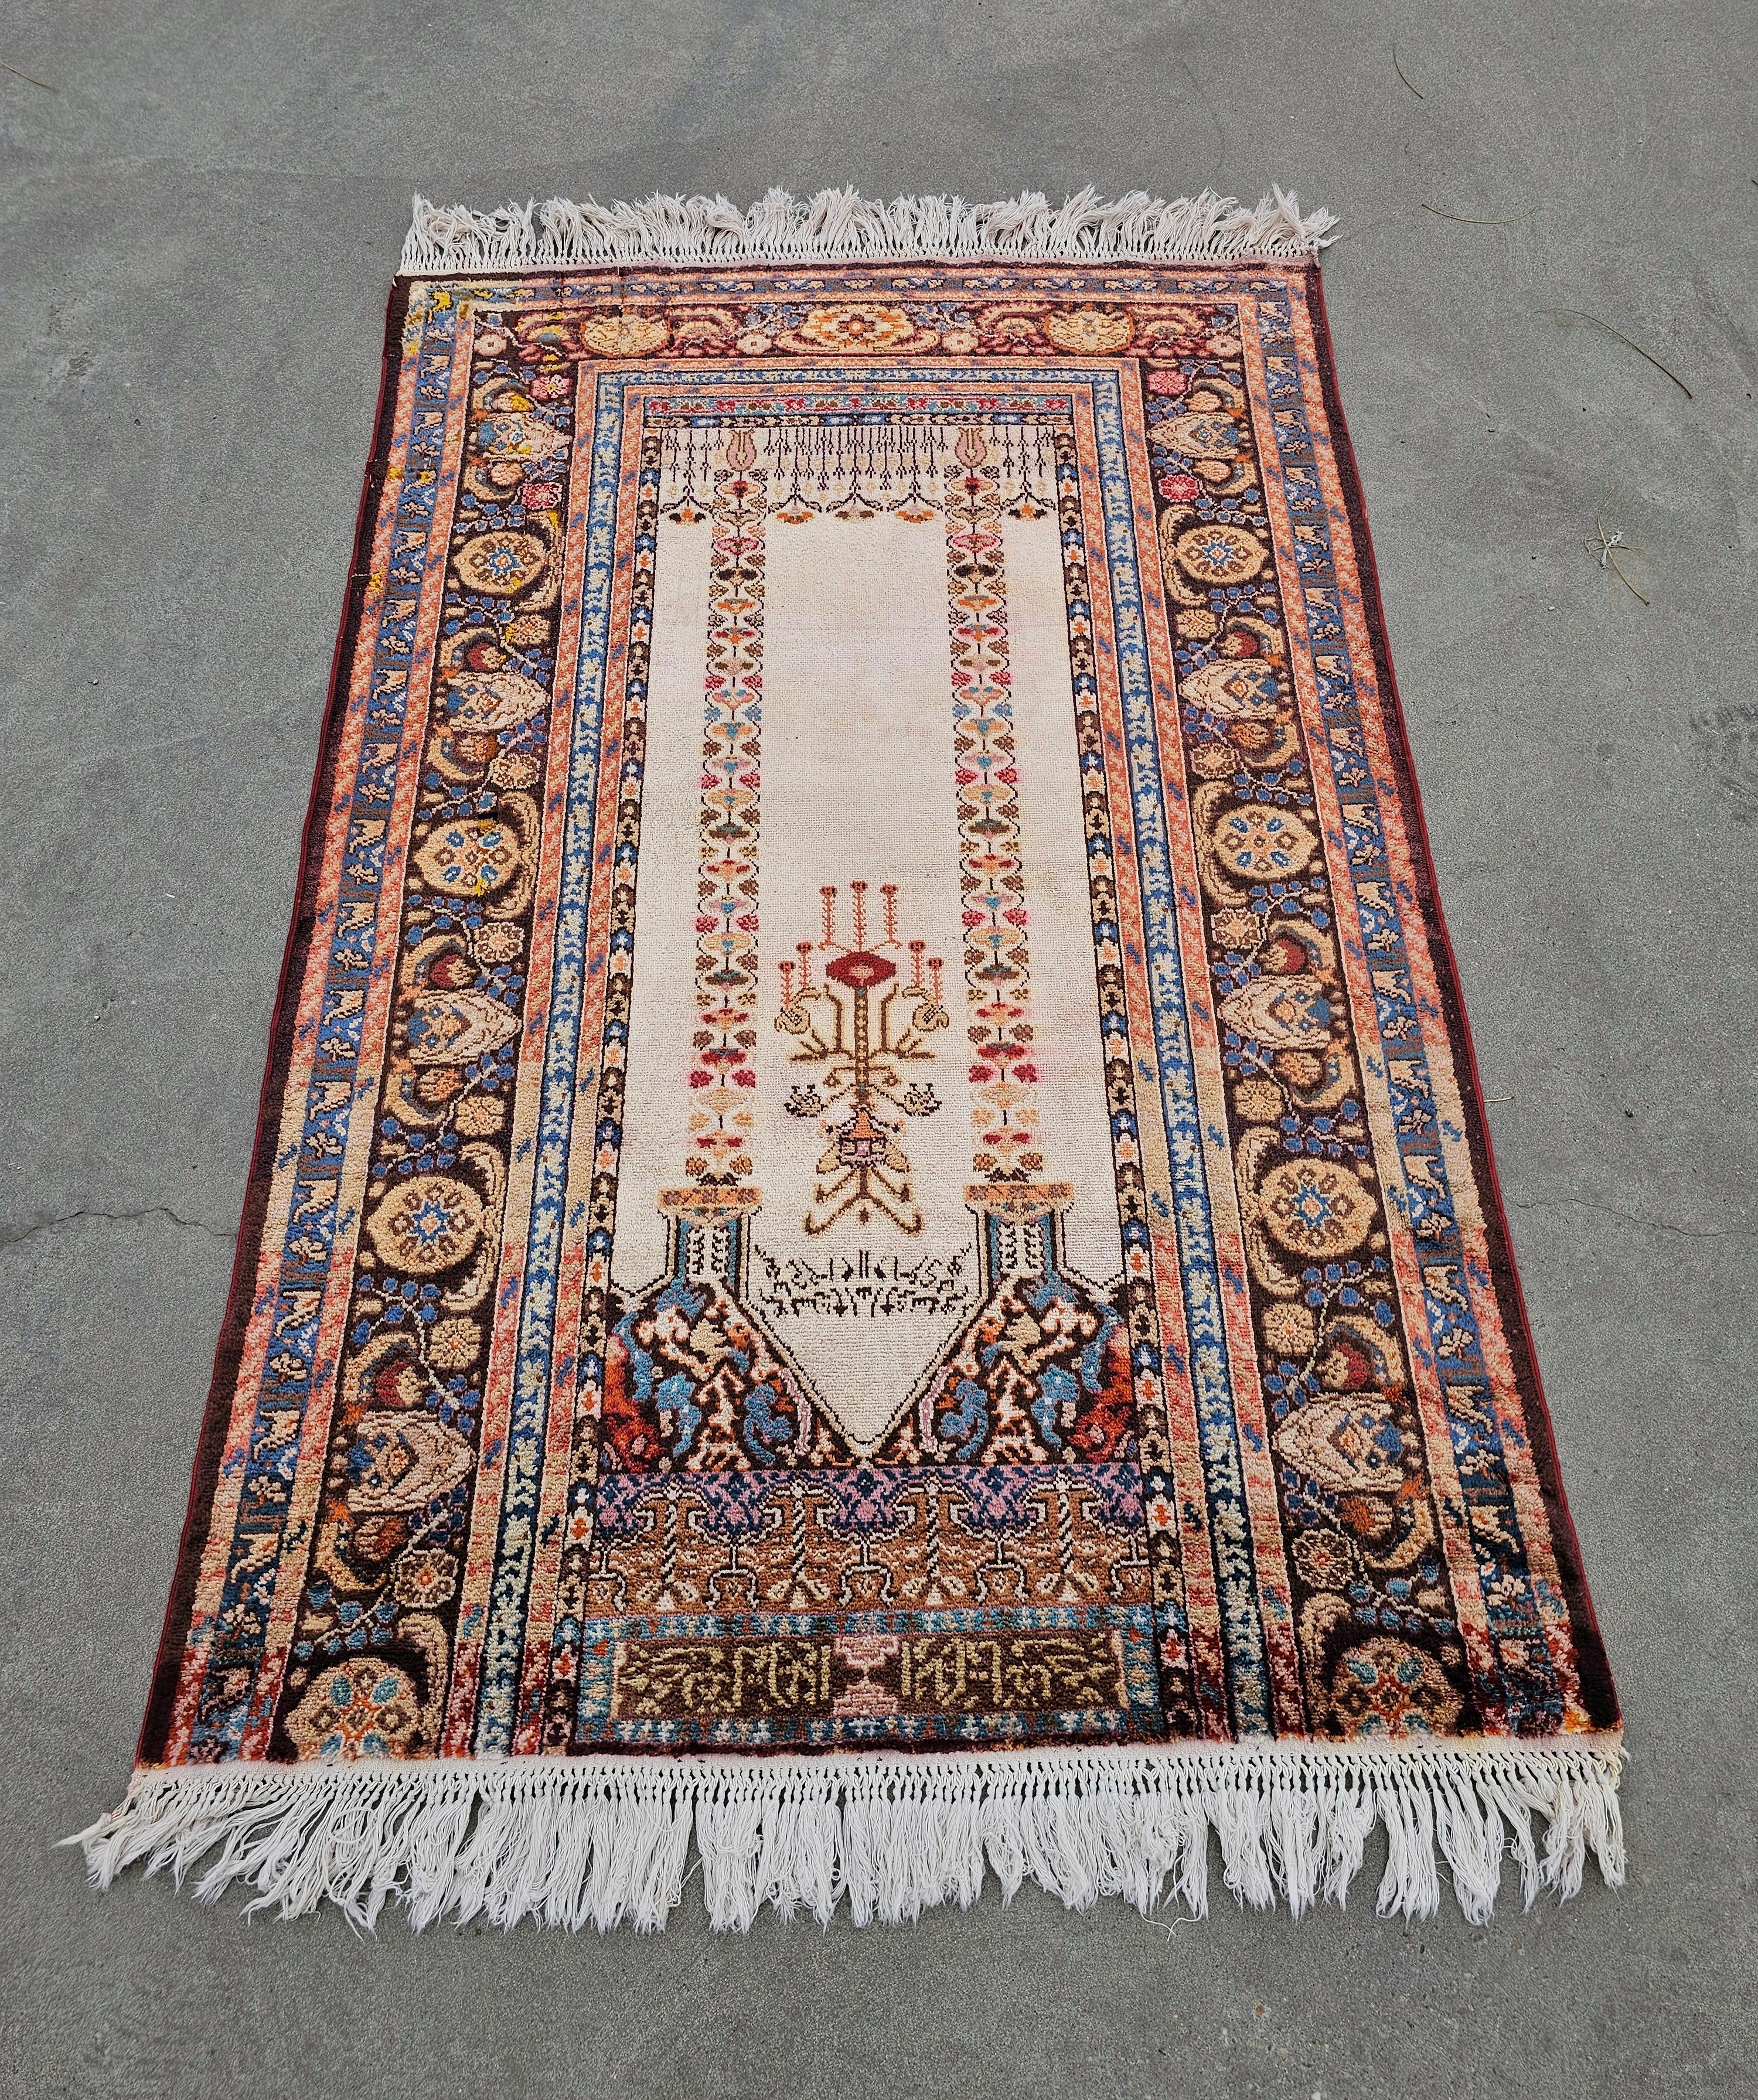 In dieser Auflistung finden Sie eine spektakuläre Vintage Western Anatolian handgeknüpfte Seide Gebetsteppich. Dieser Panderma-Teppich zeigt ein Mihrab-Muster mit Schriftzügen und schönen Farben in Creme, Violett, Burgunderblau und Orange. Er ist